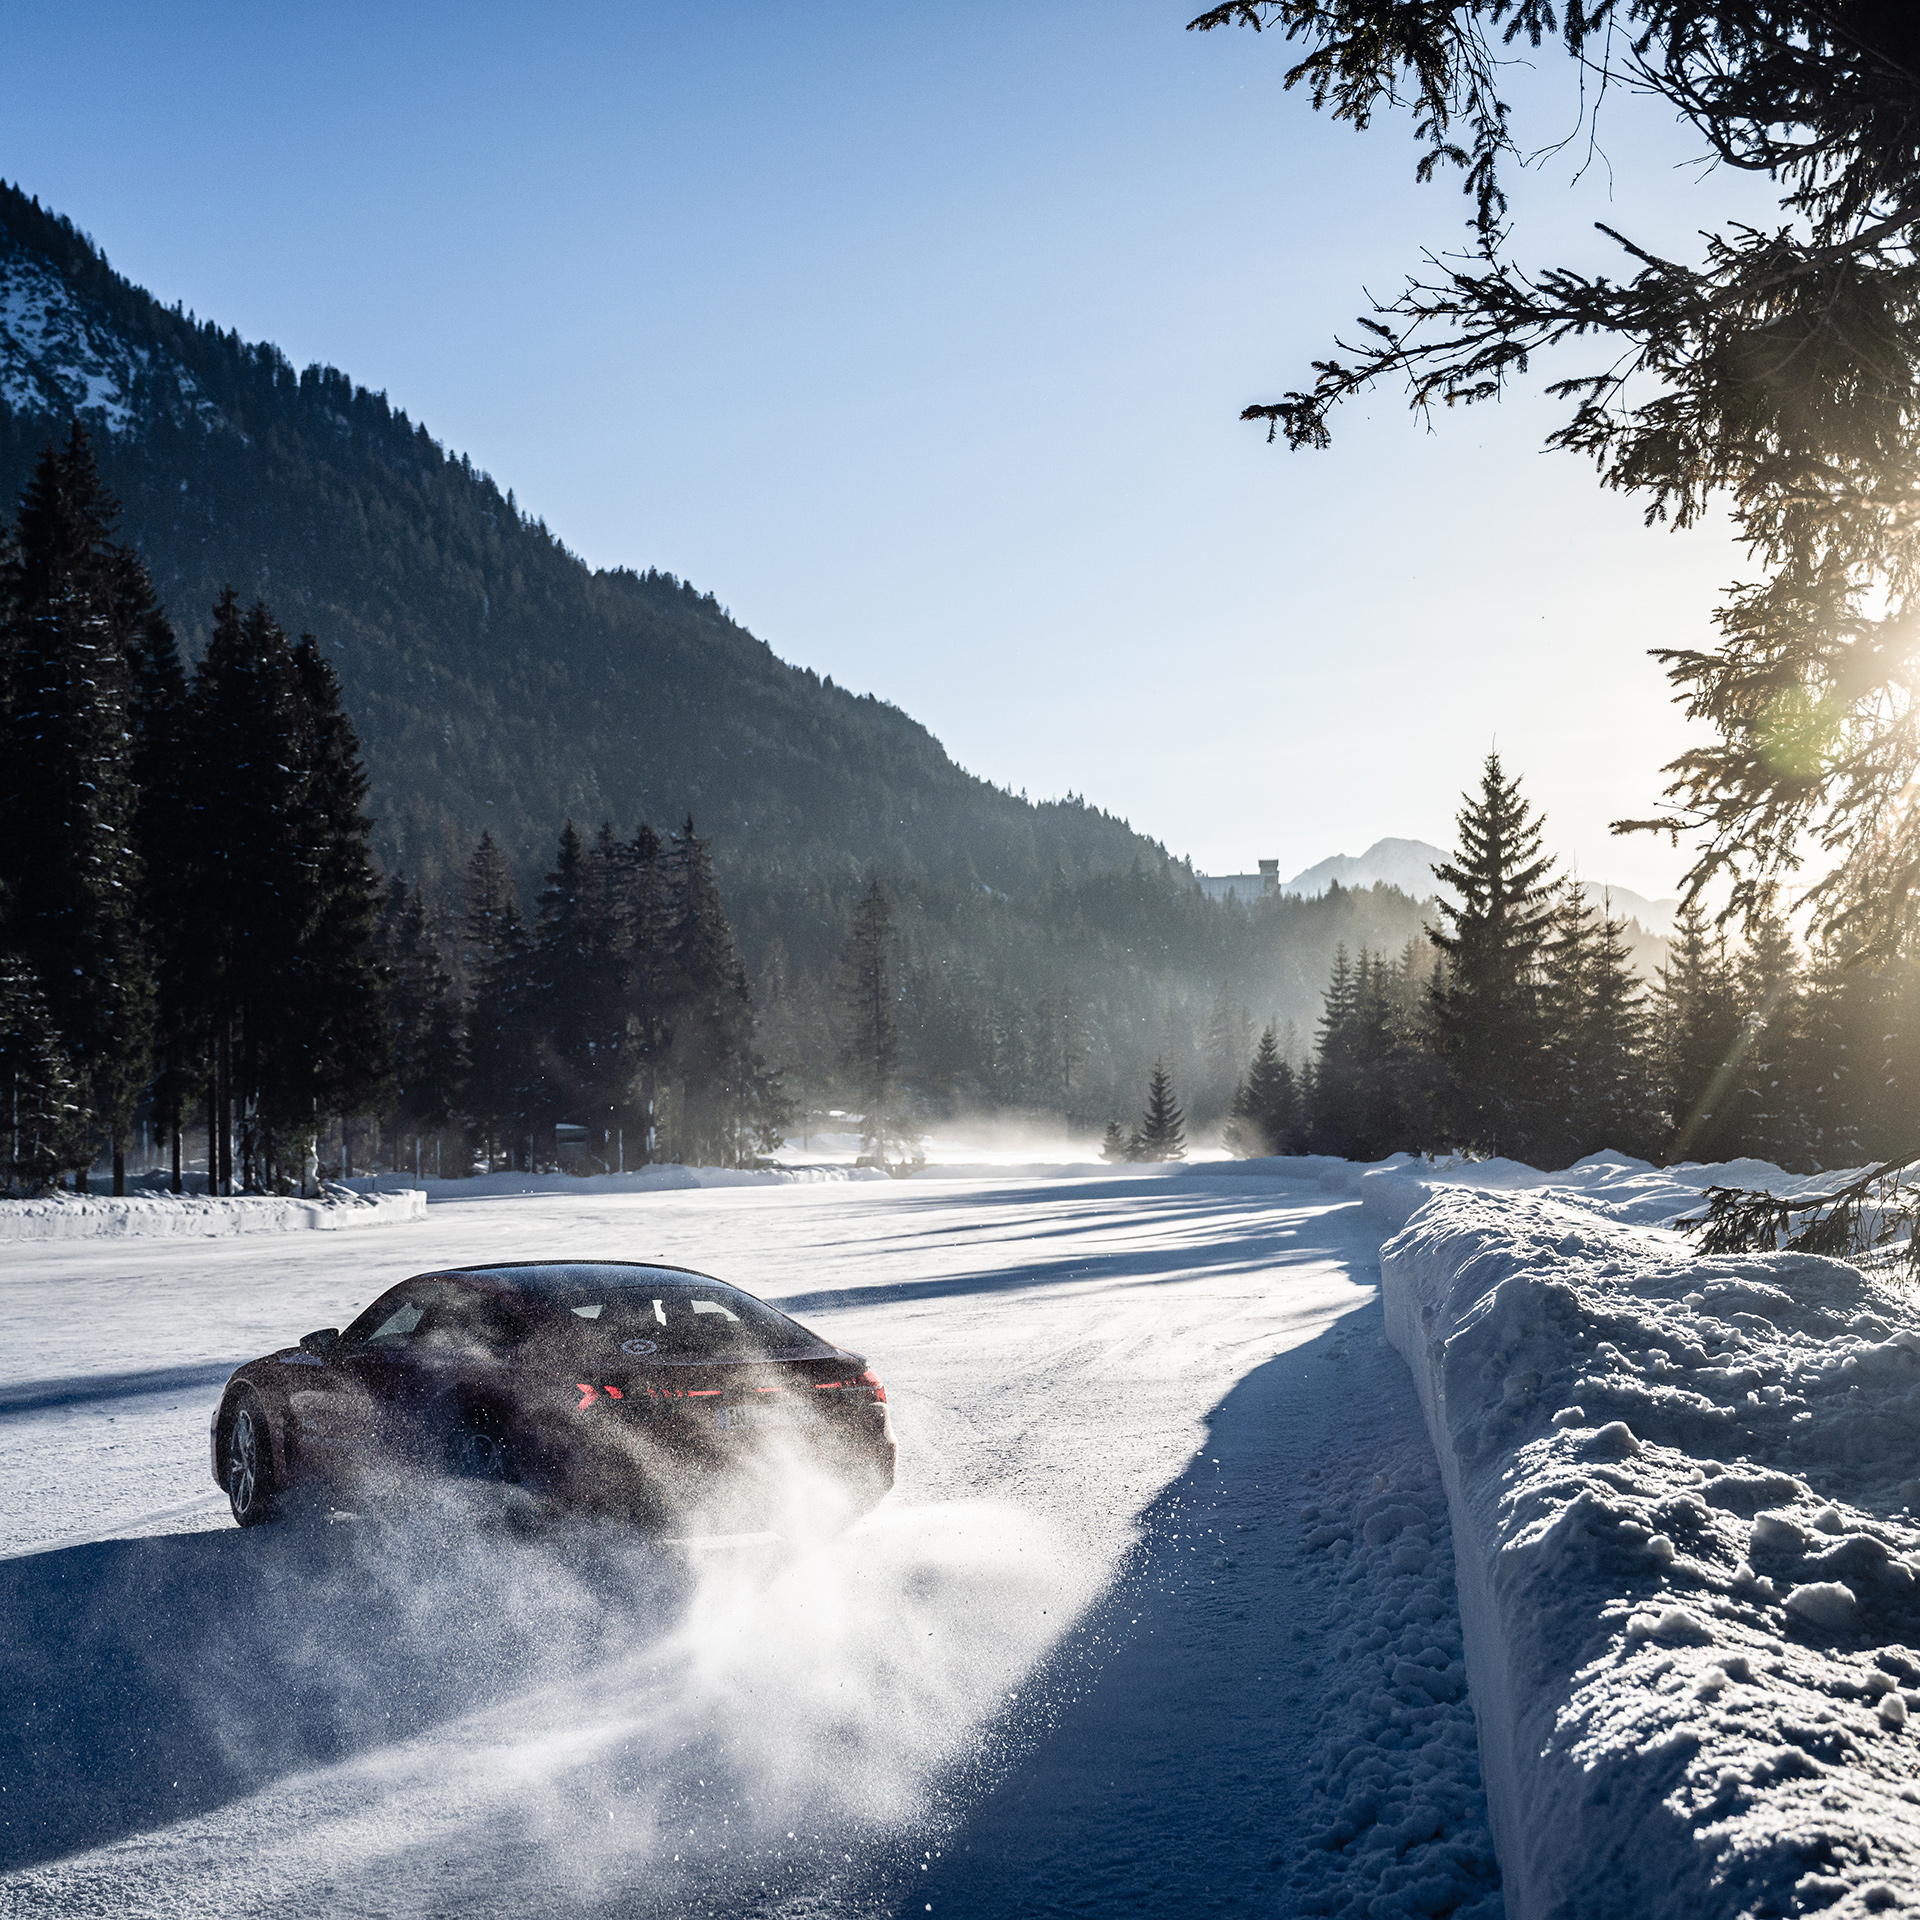 Schwarzer Audi RS 5 Sportback driftet im Schnee bei Sonnenschein und blauem Himmel. Im Hintergrund sind Bäume und Berge zu sehen.